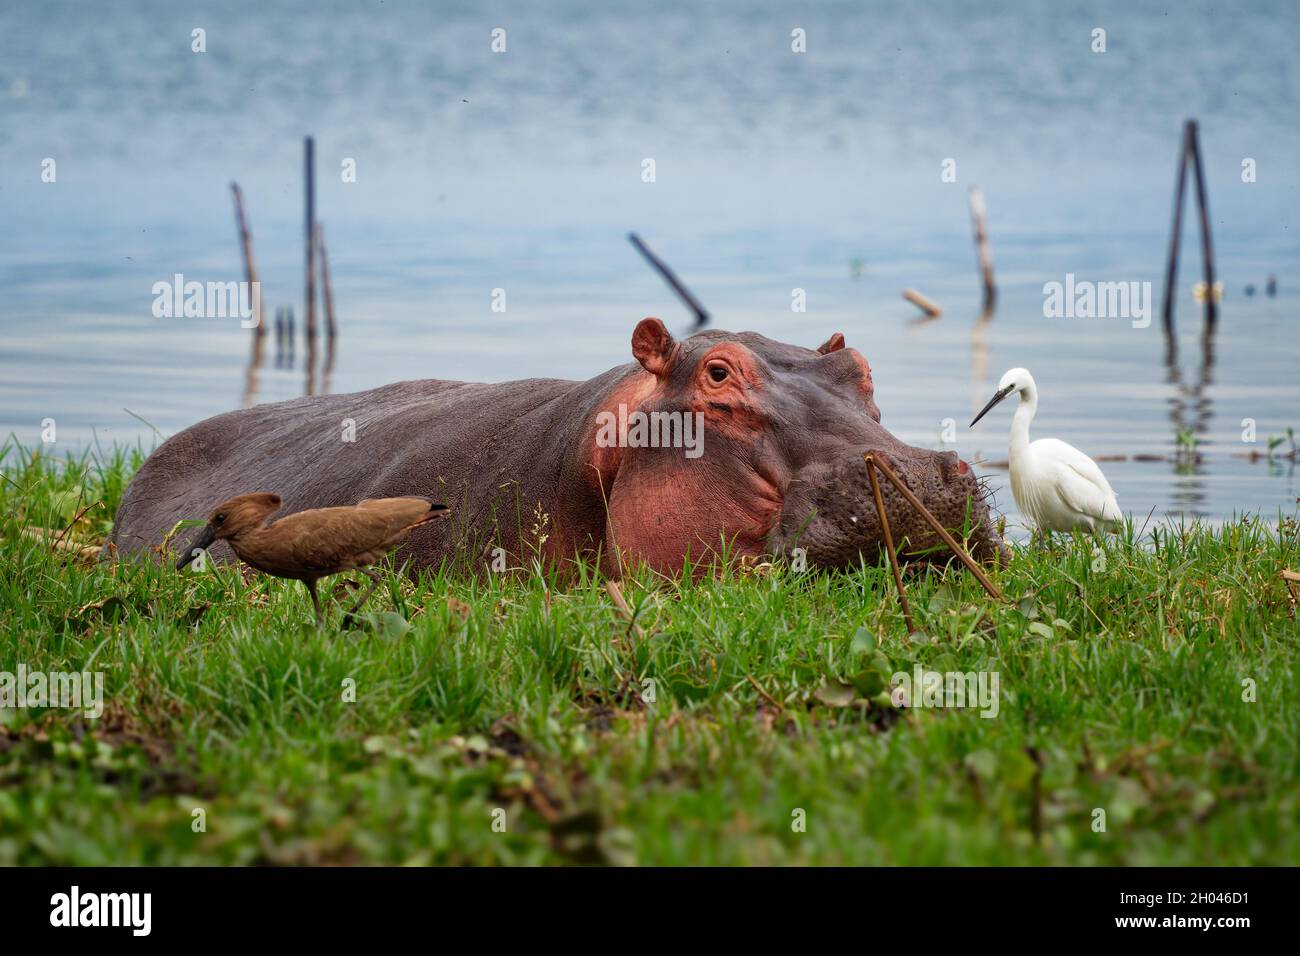 Hippopotamus - Ippopotamus anfibio o ippopotamo mammifero grande, per lo più erbivoro, semi-acquatico nativo dell'Africa sub-sahariana, nell'acqua con hamerkop Foto Stock